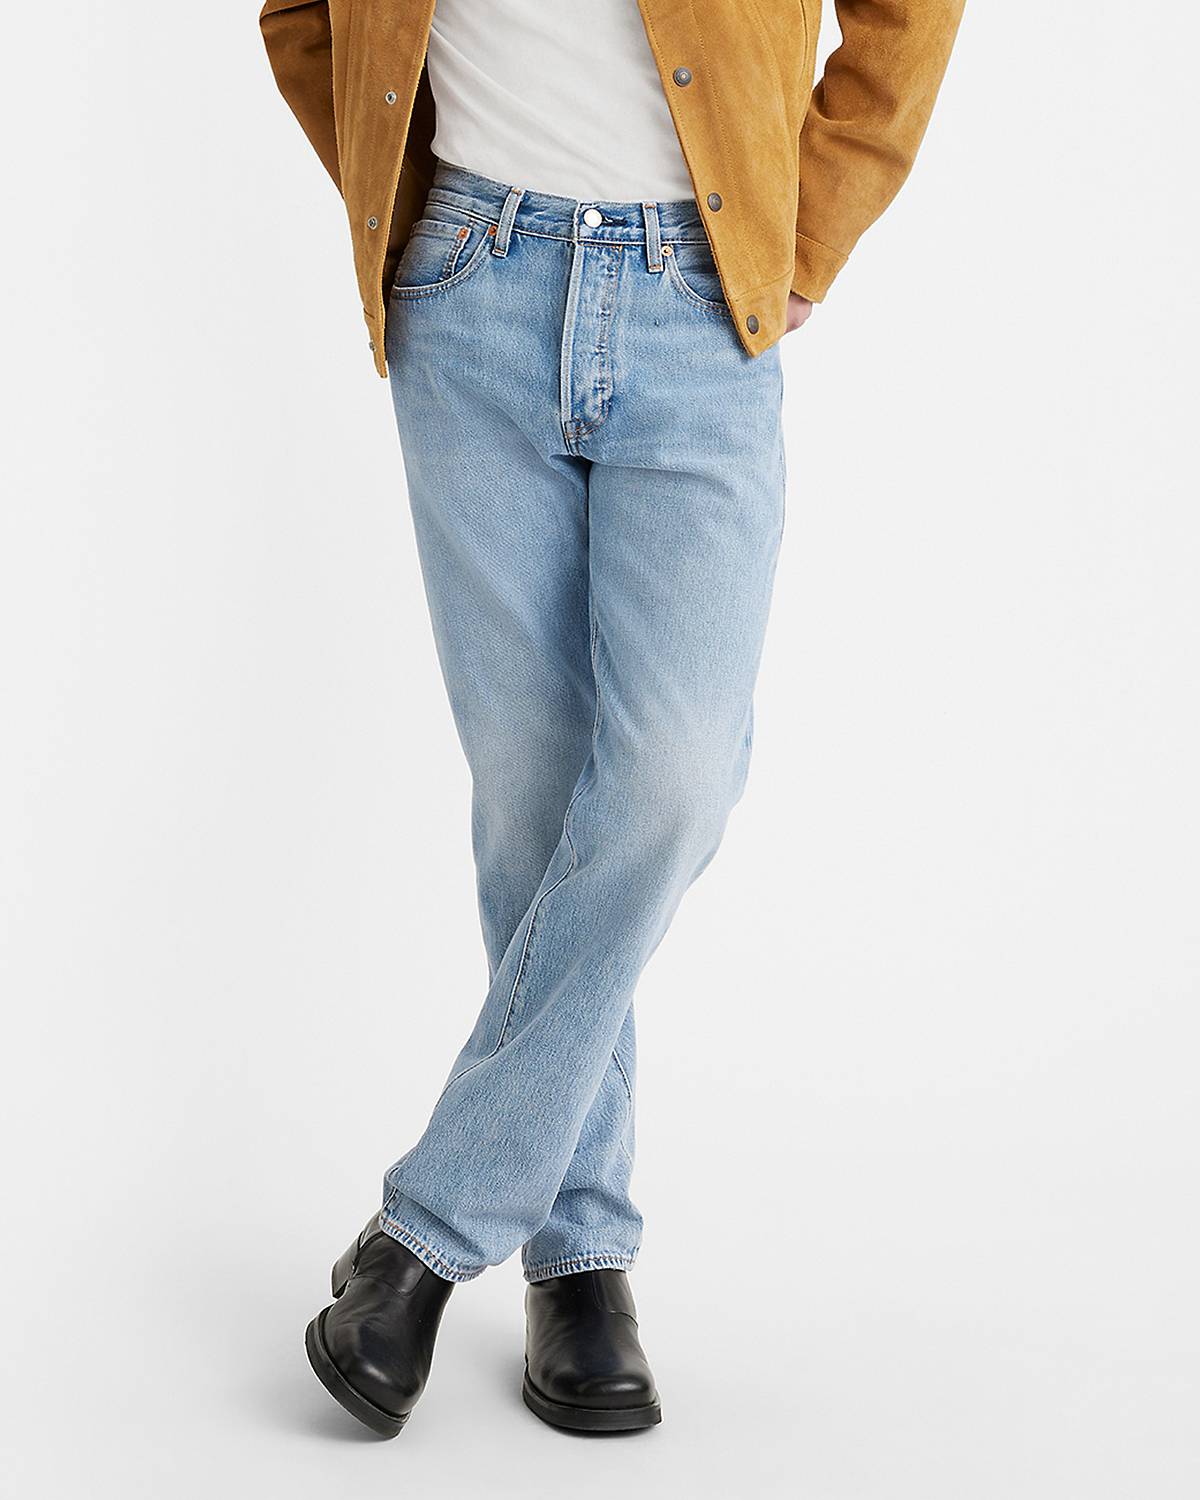 Male model wearing jean pants.